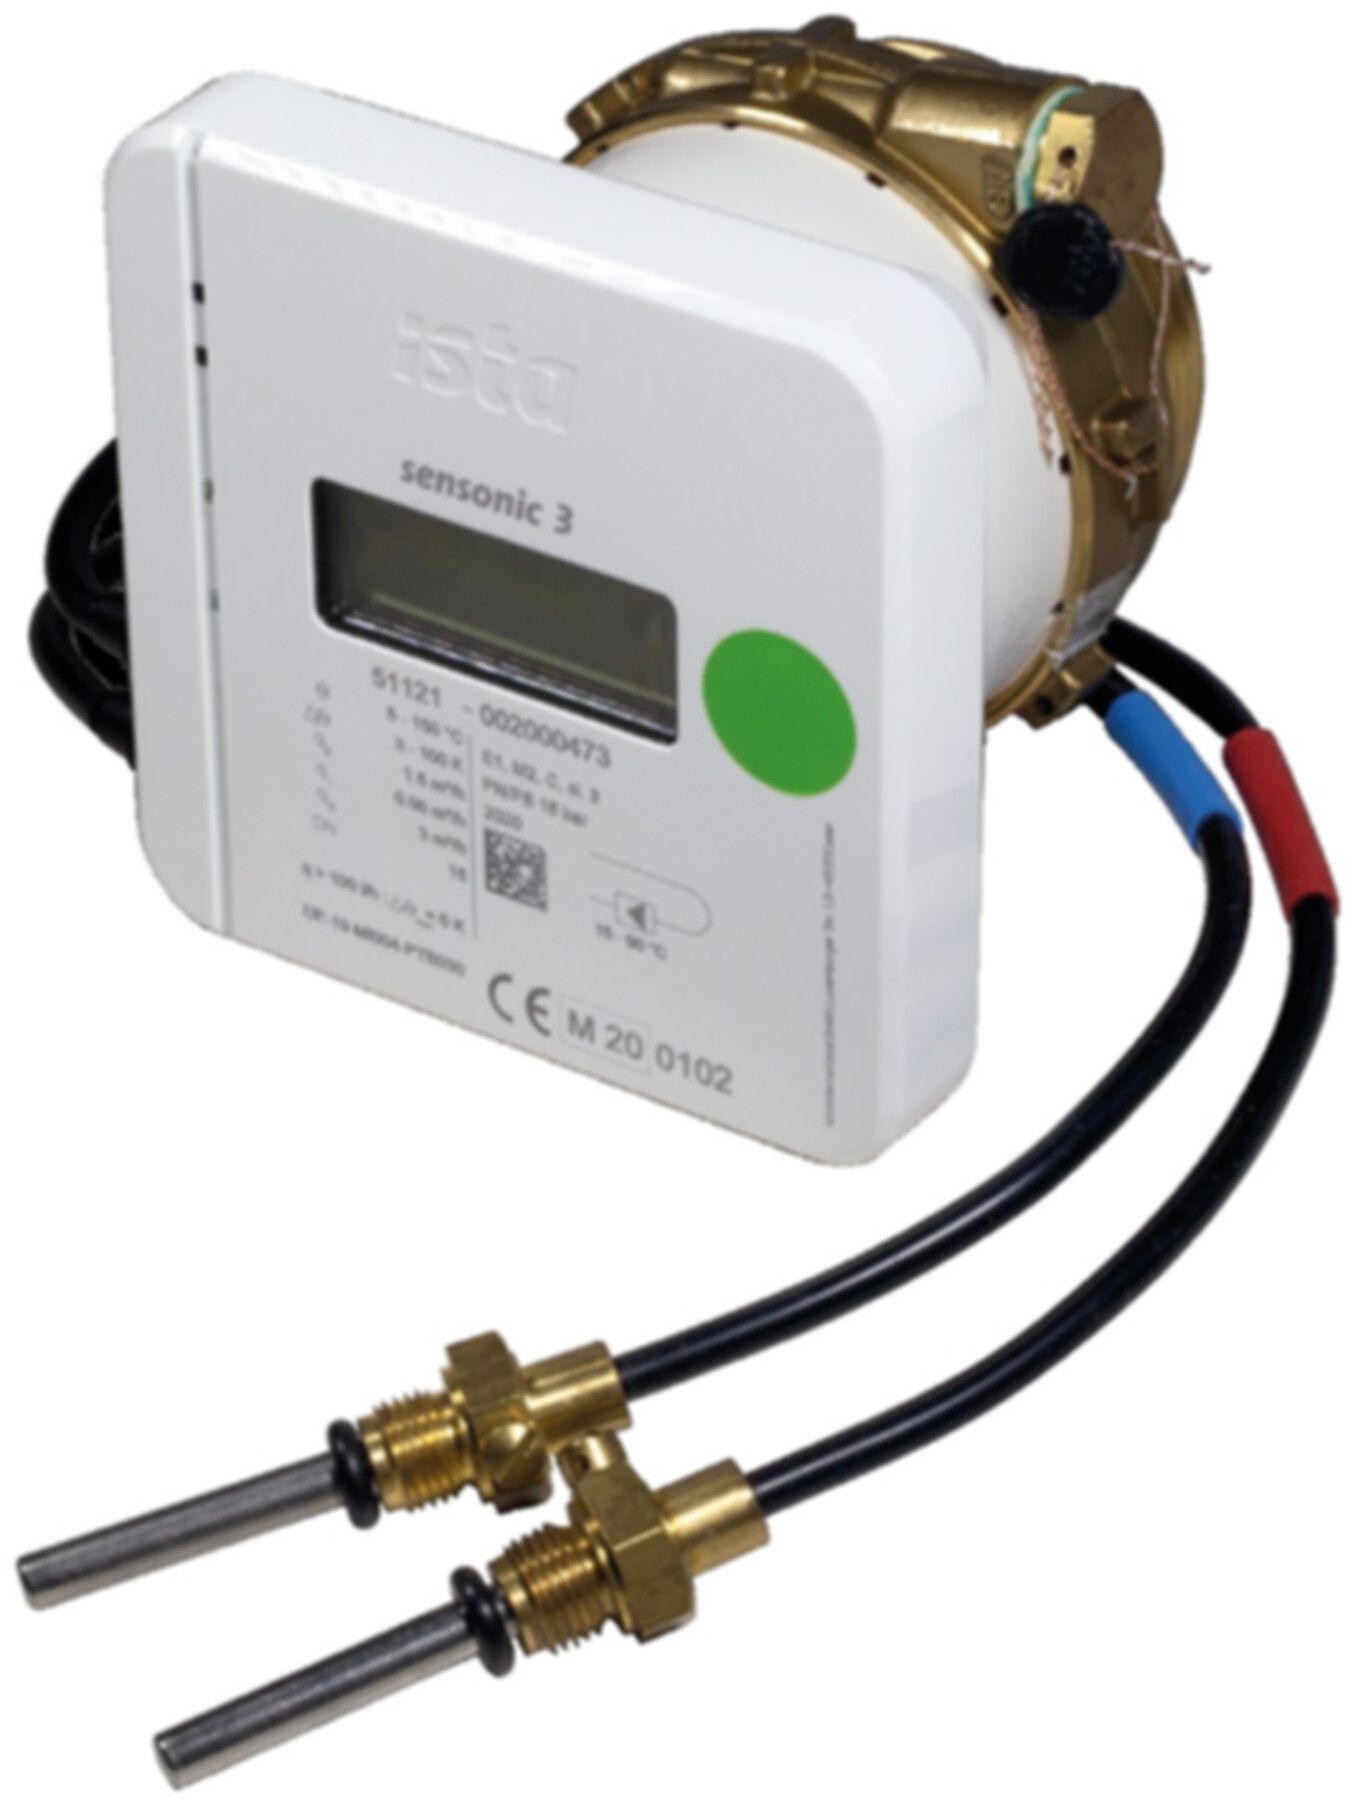 Wärmezähler Sensonic III EAS 16 bar 15-90°C 1.5 m3/h - ISTA - Wärme- / Wasserzähler